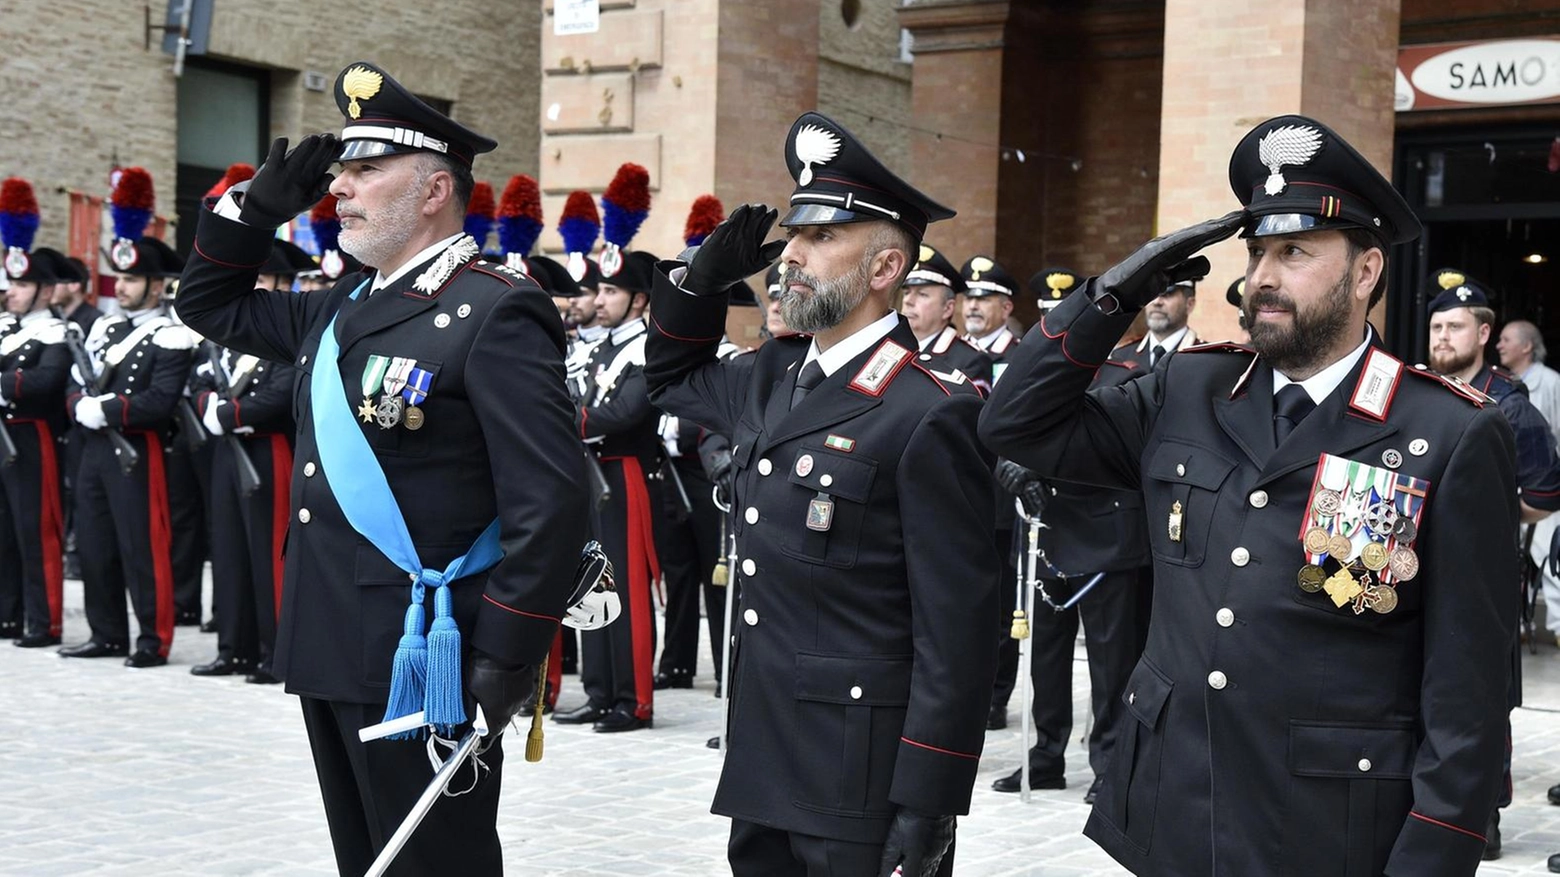 Cerimonia in piazza Vittorio Veneto per i 210 anni dalla fondazione. Gli encomi ai militari che si sono distinti nelle operazioni sul territorio.